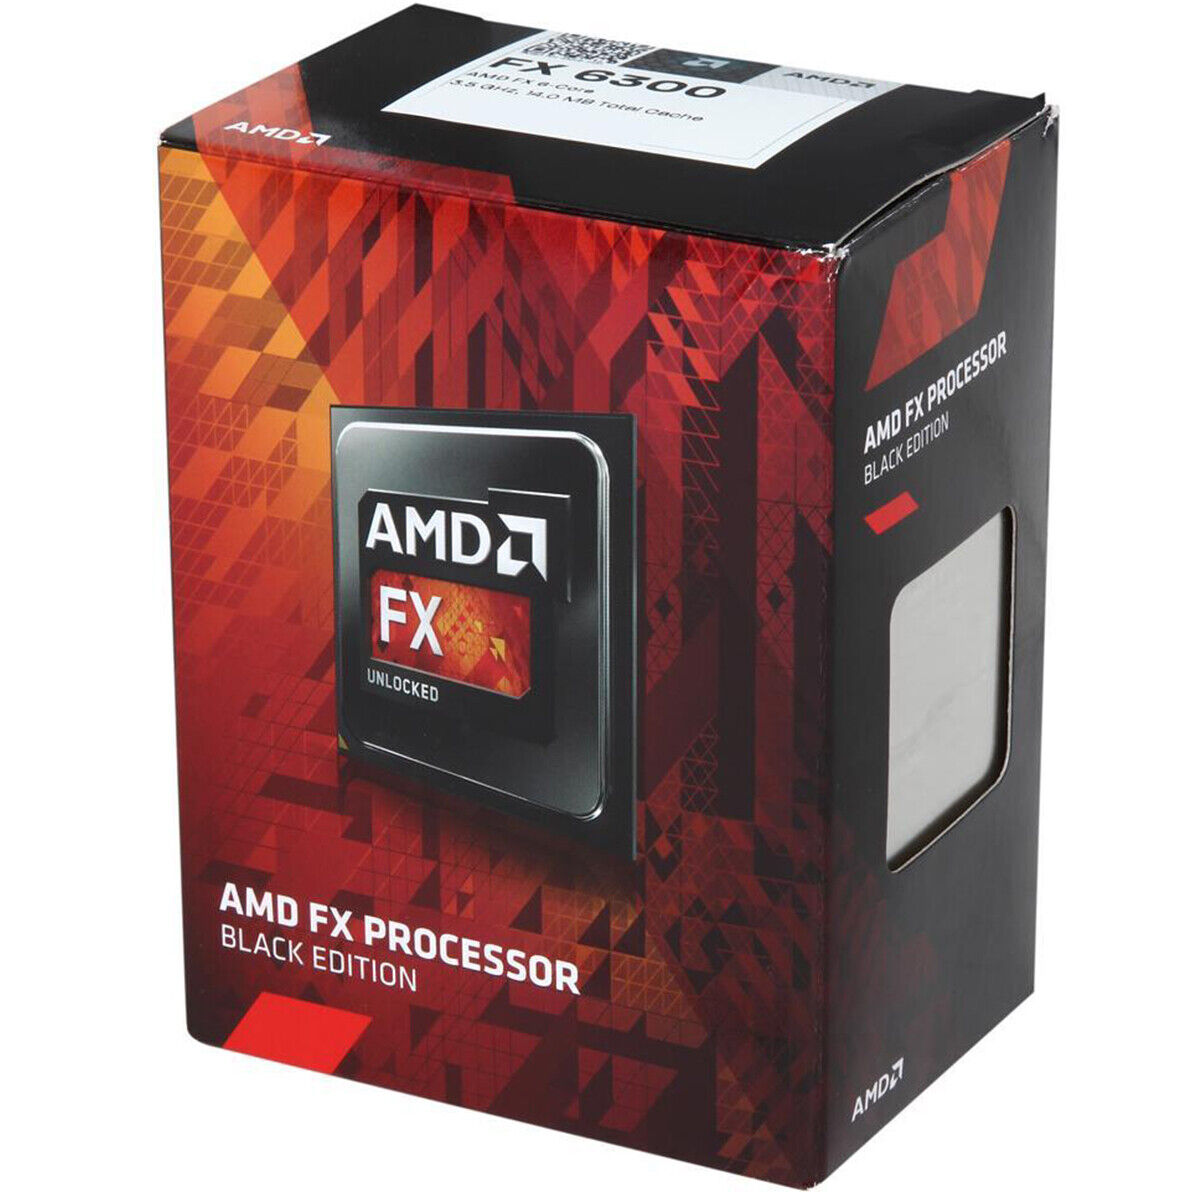 AMD FX-6300 6-Core 3.5 GHz Socket AM3+ 95W FD6300WMW6KHK Desktop Processor